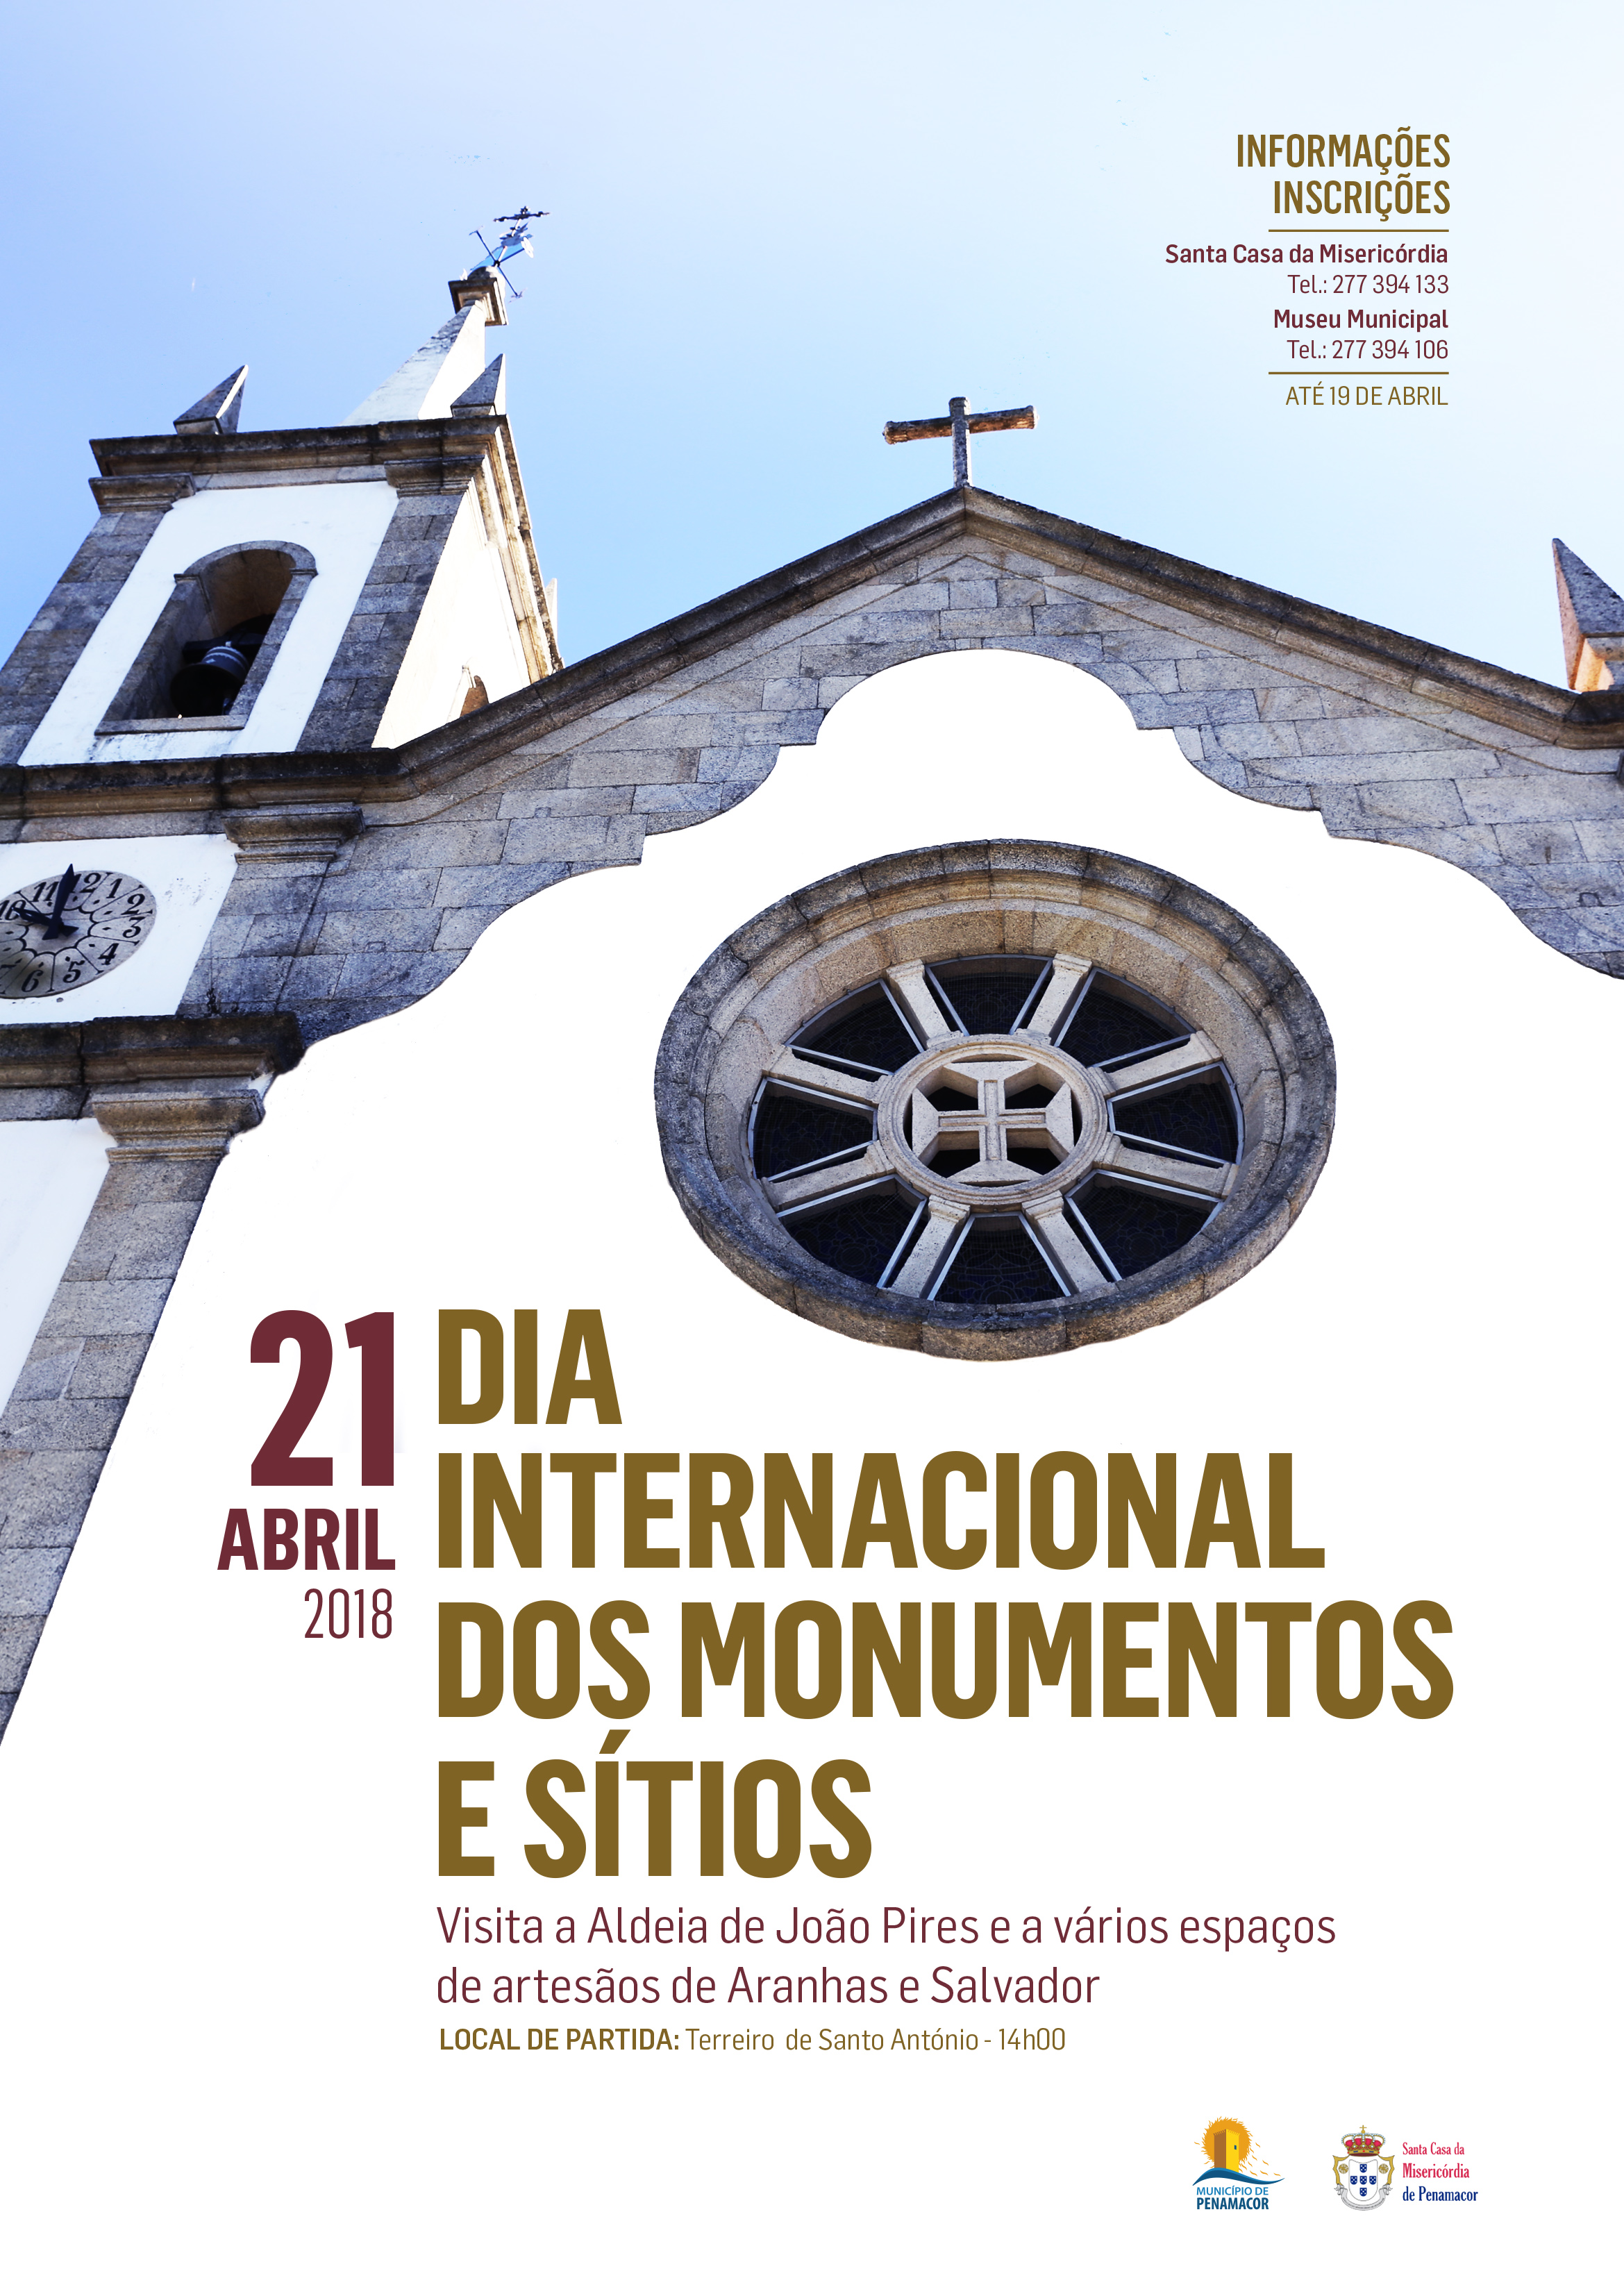 Penamacor assinala Dia Internacional dos Monumentos e Sítios